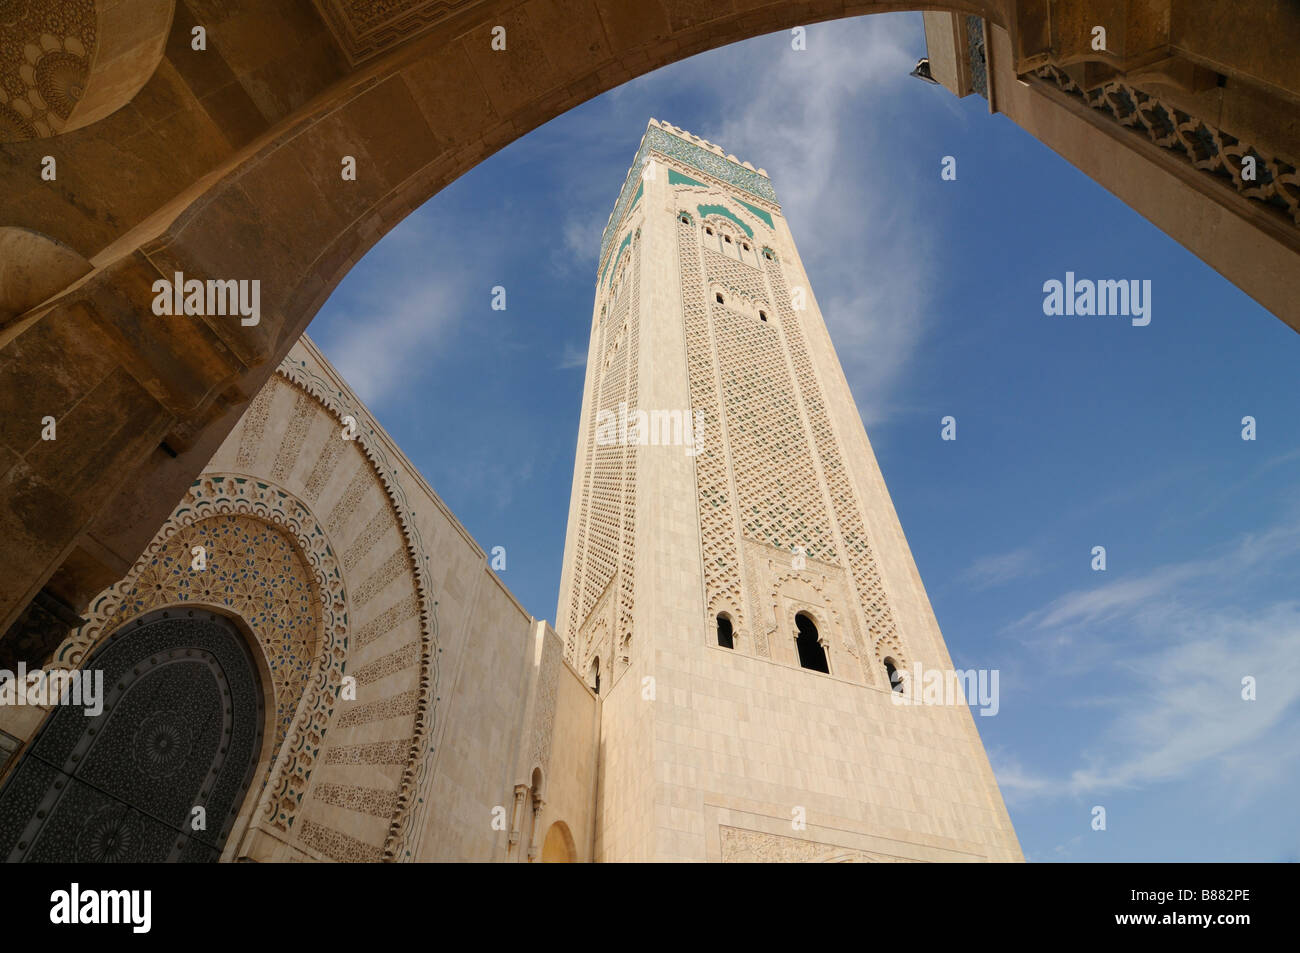 Le minaret de la Mosquée Hassan II de Casablanca Maroc Banque D'Images